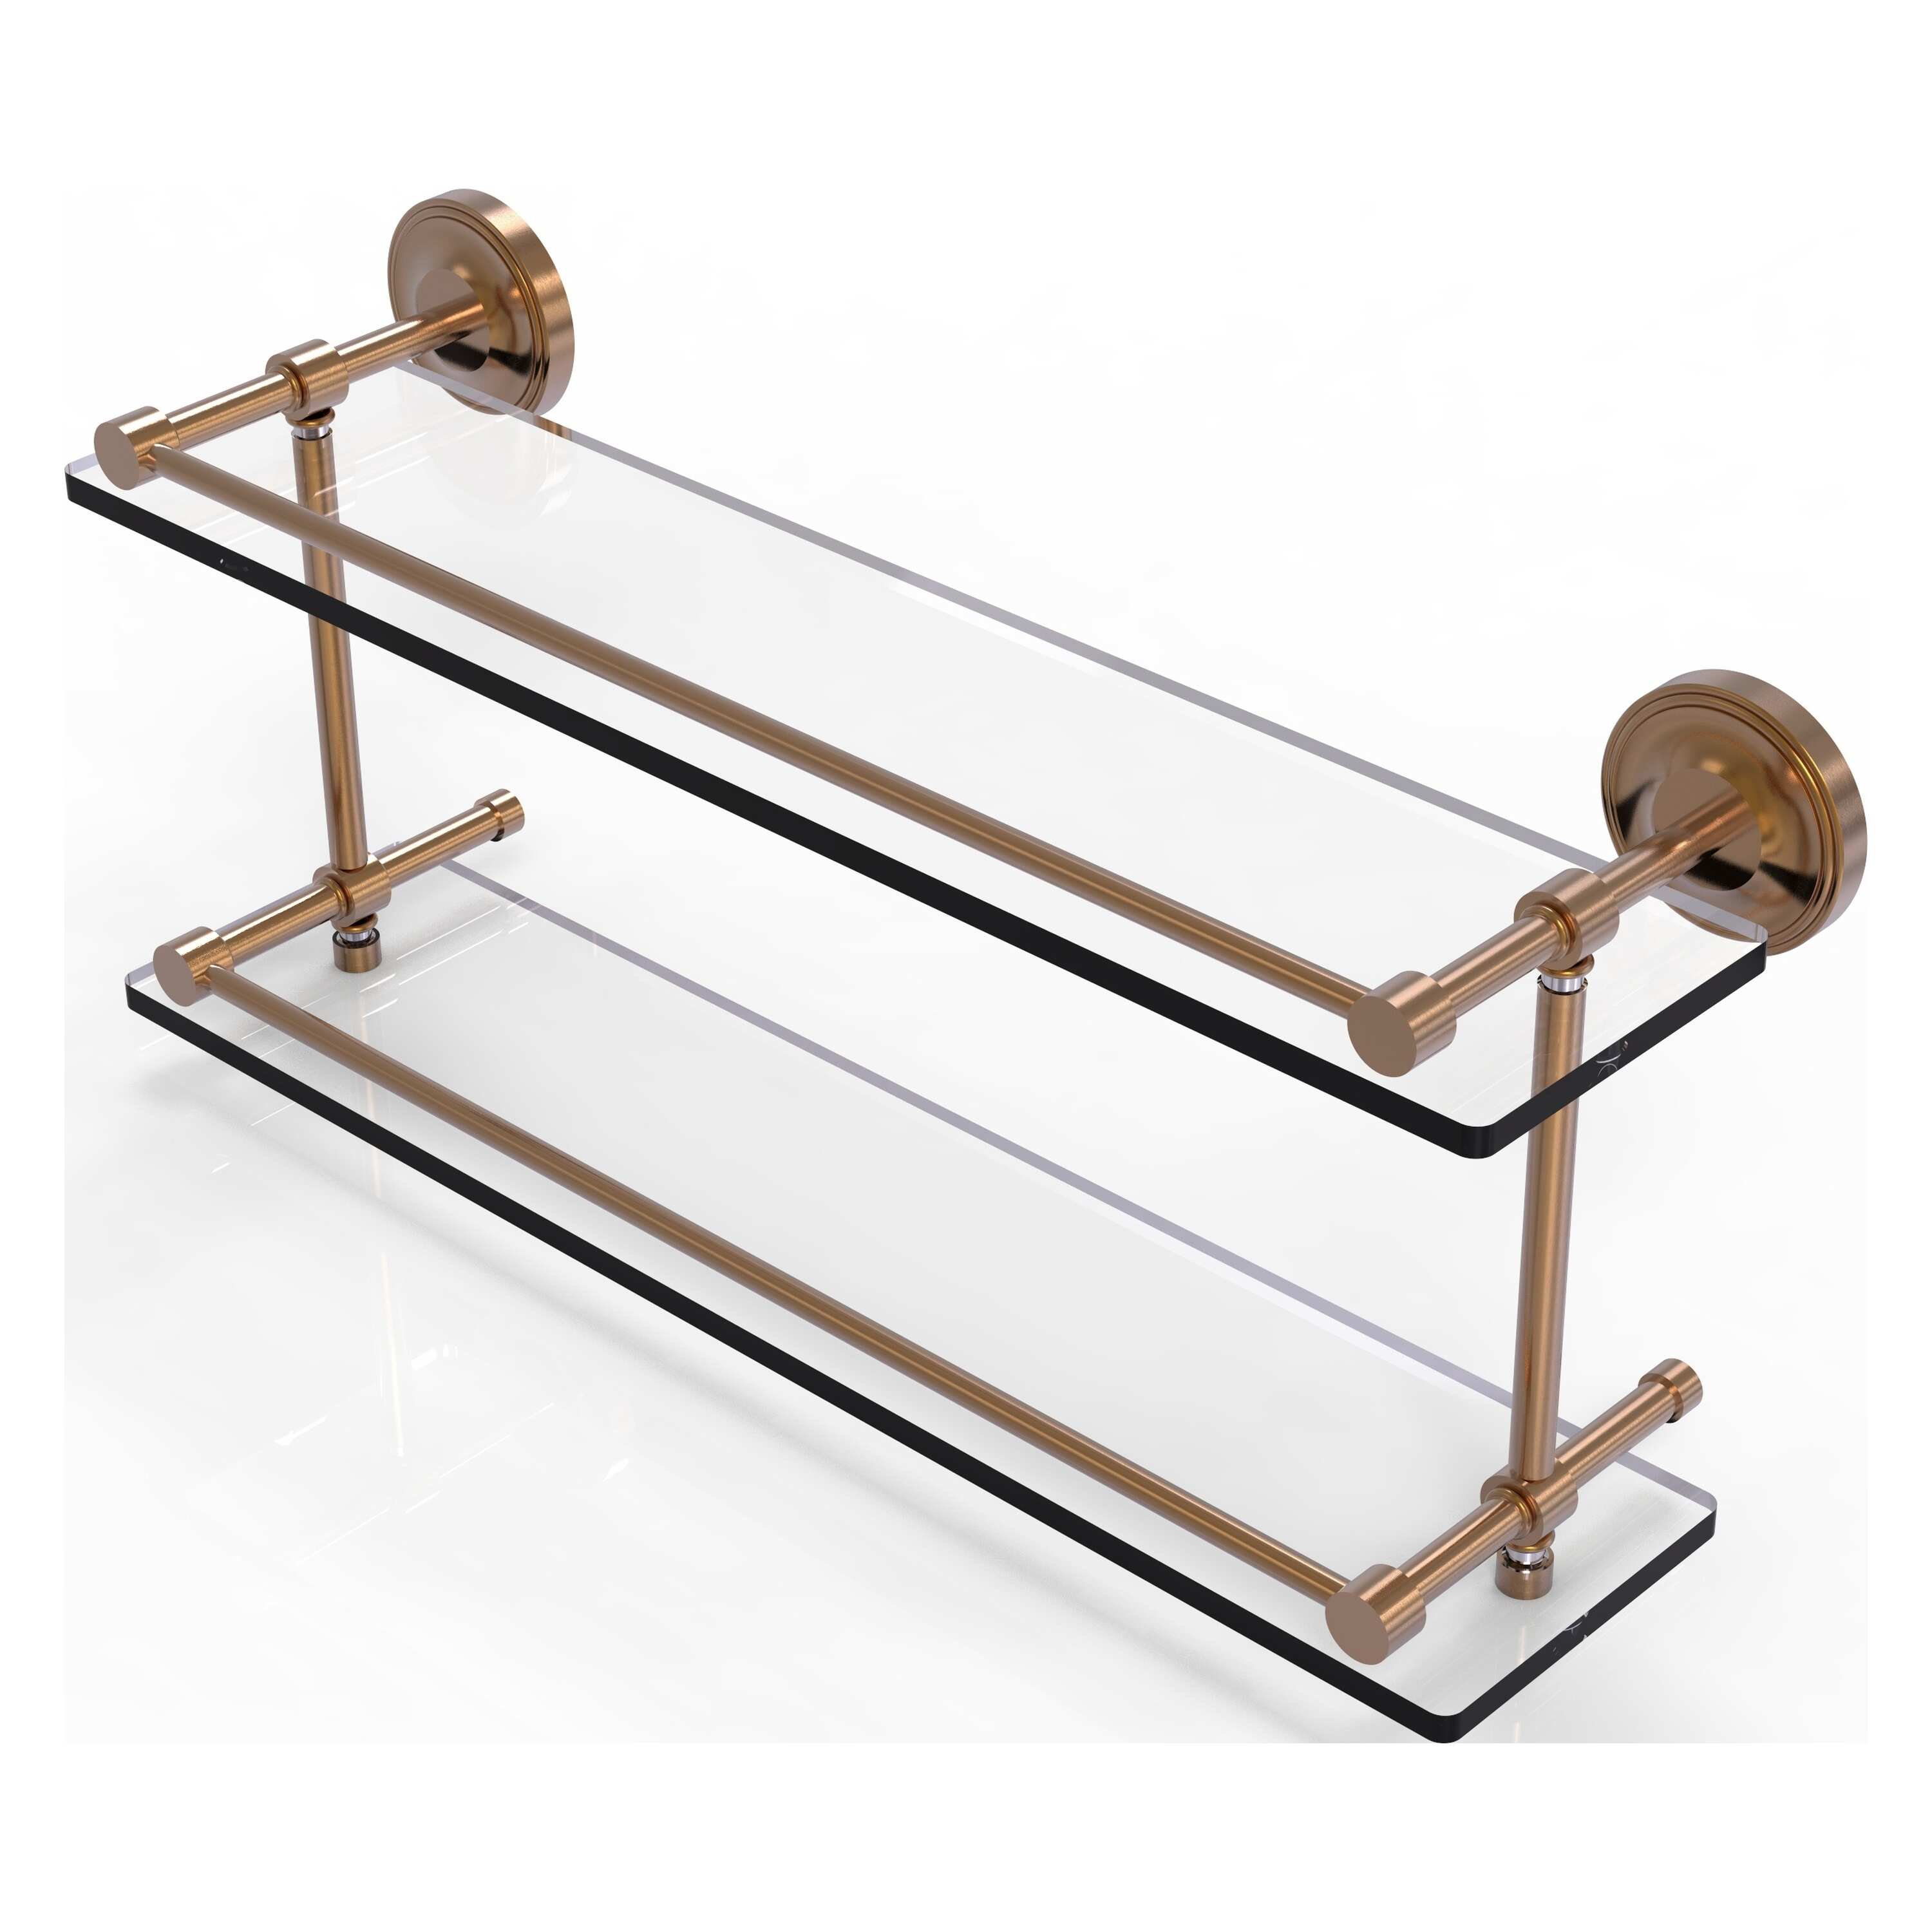 Allied Brass Prestige Regal 22 Inch Double Glass Shelf with Gallery Rail